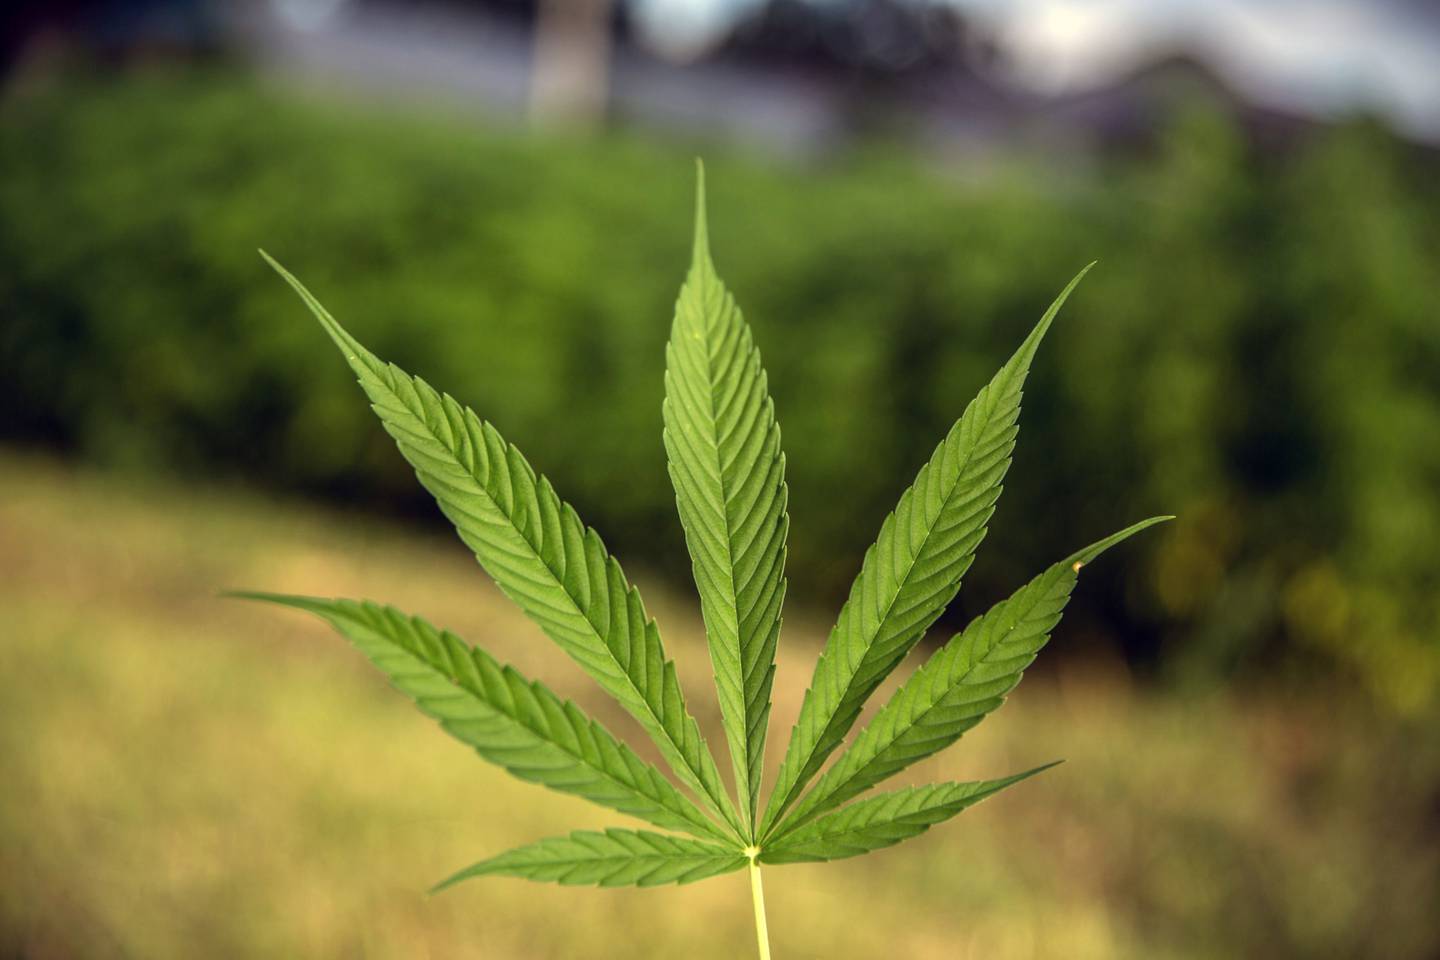 La hoja de una planta de cannabis, cultivada en un campo con fines de investigación médica, se muestra para una fotografía.